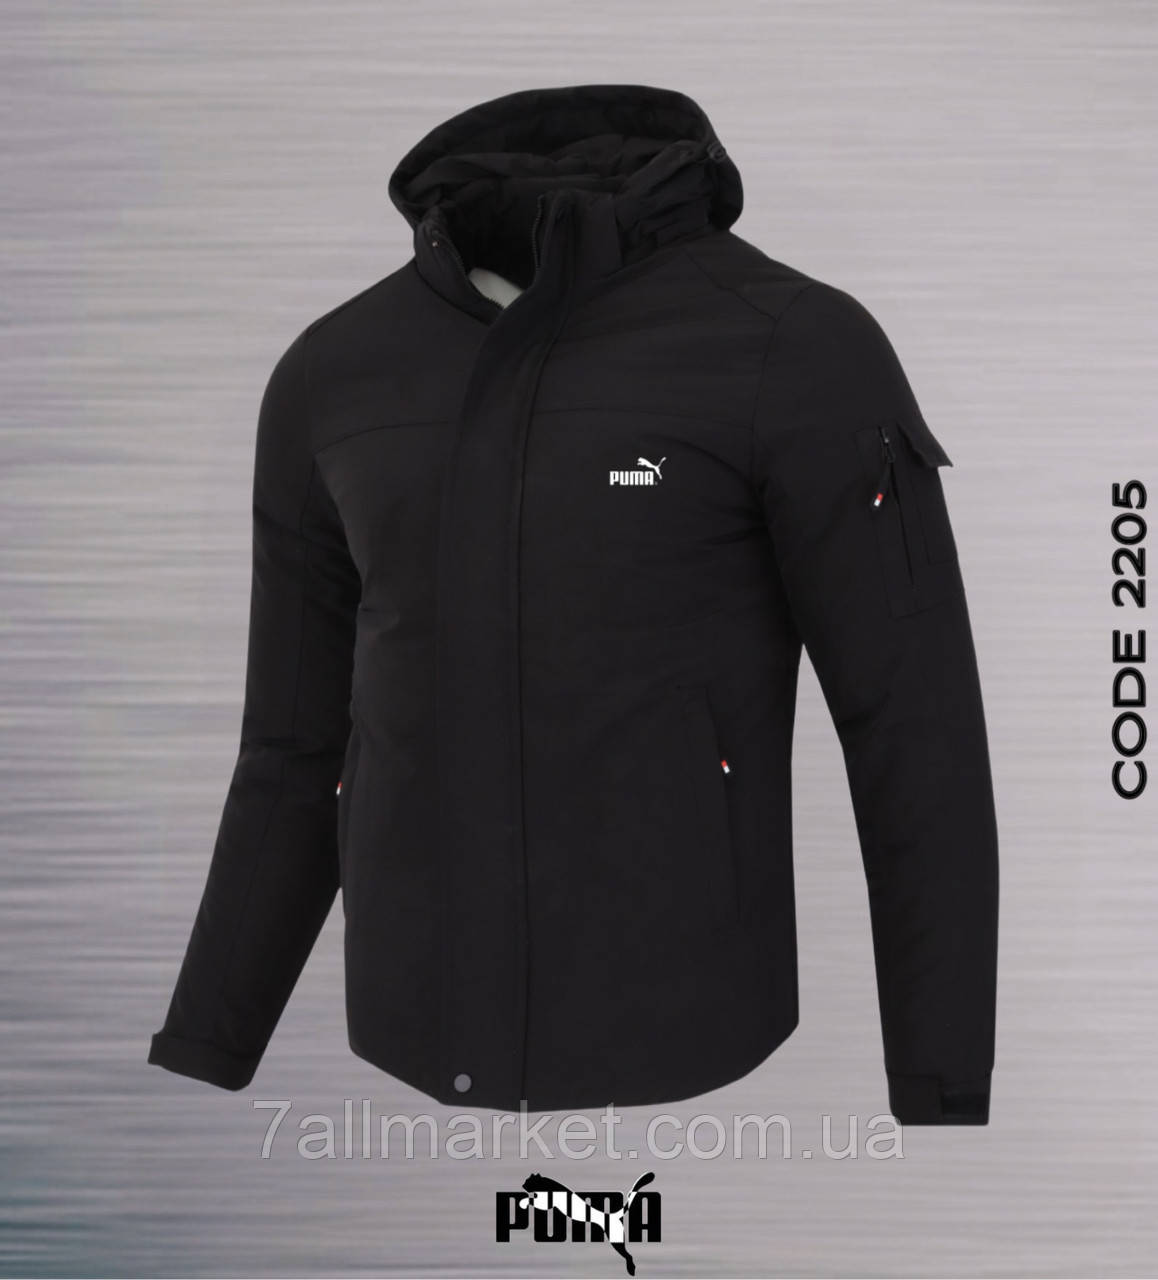 Куртка чоловіча зимова з капюшоном PUMA розміри 44-52 (3цв) "REMAIN" купити недорого від прямого постачальника